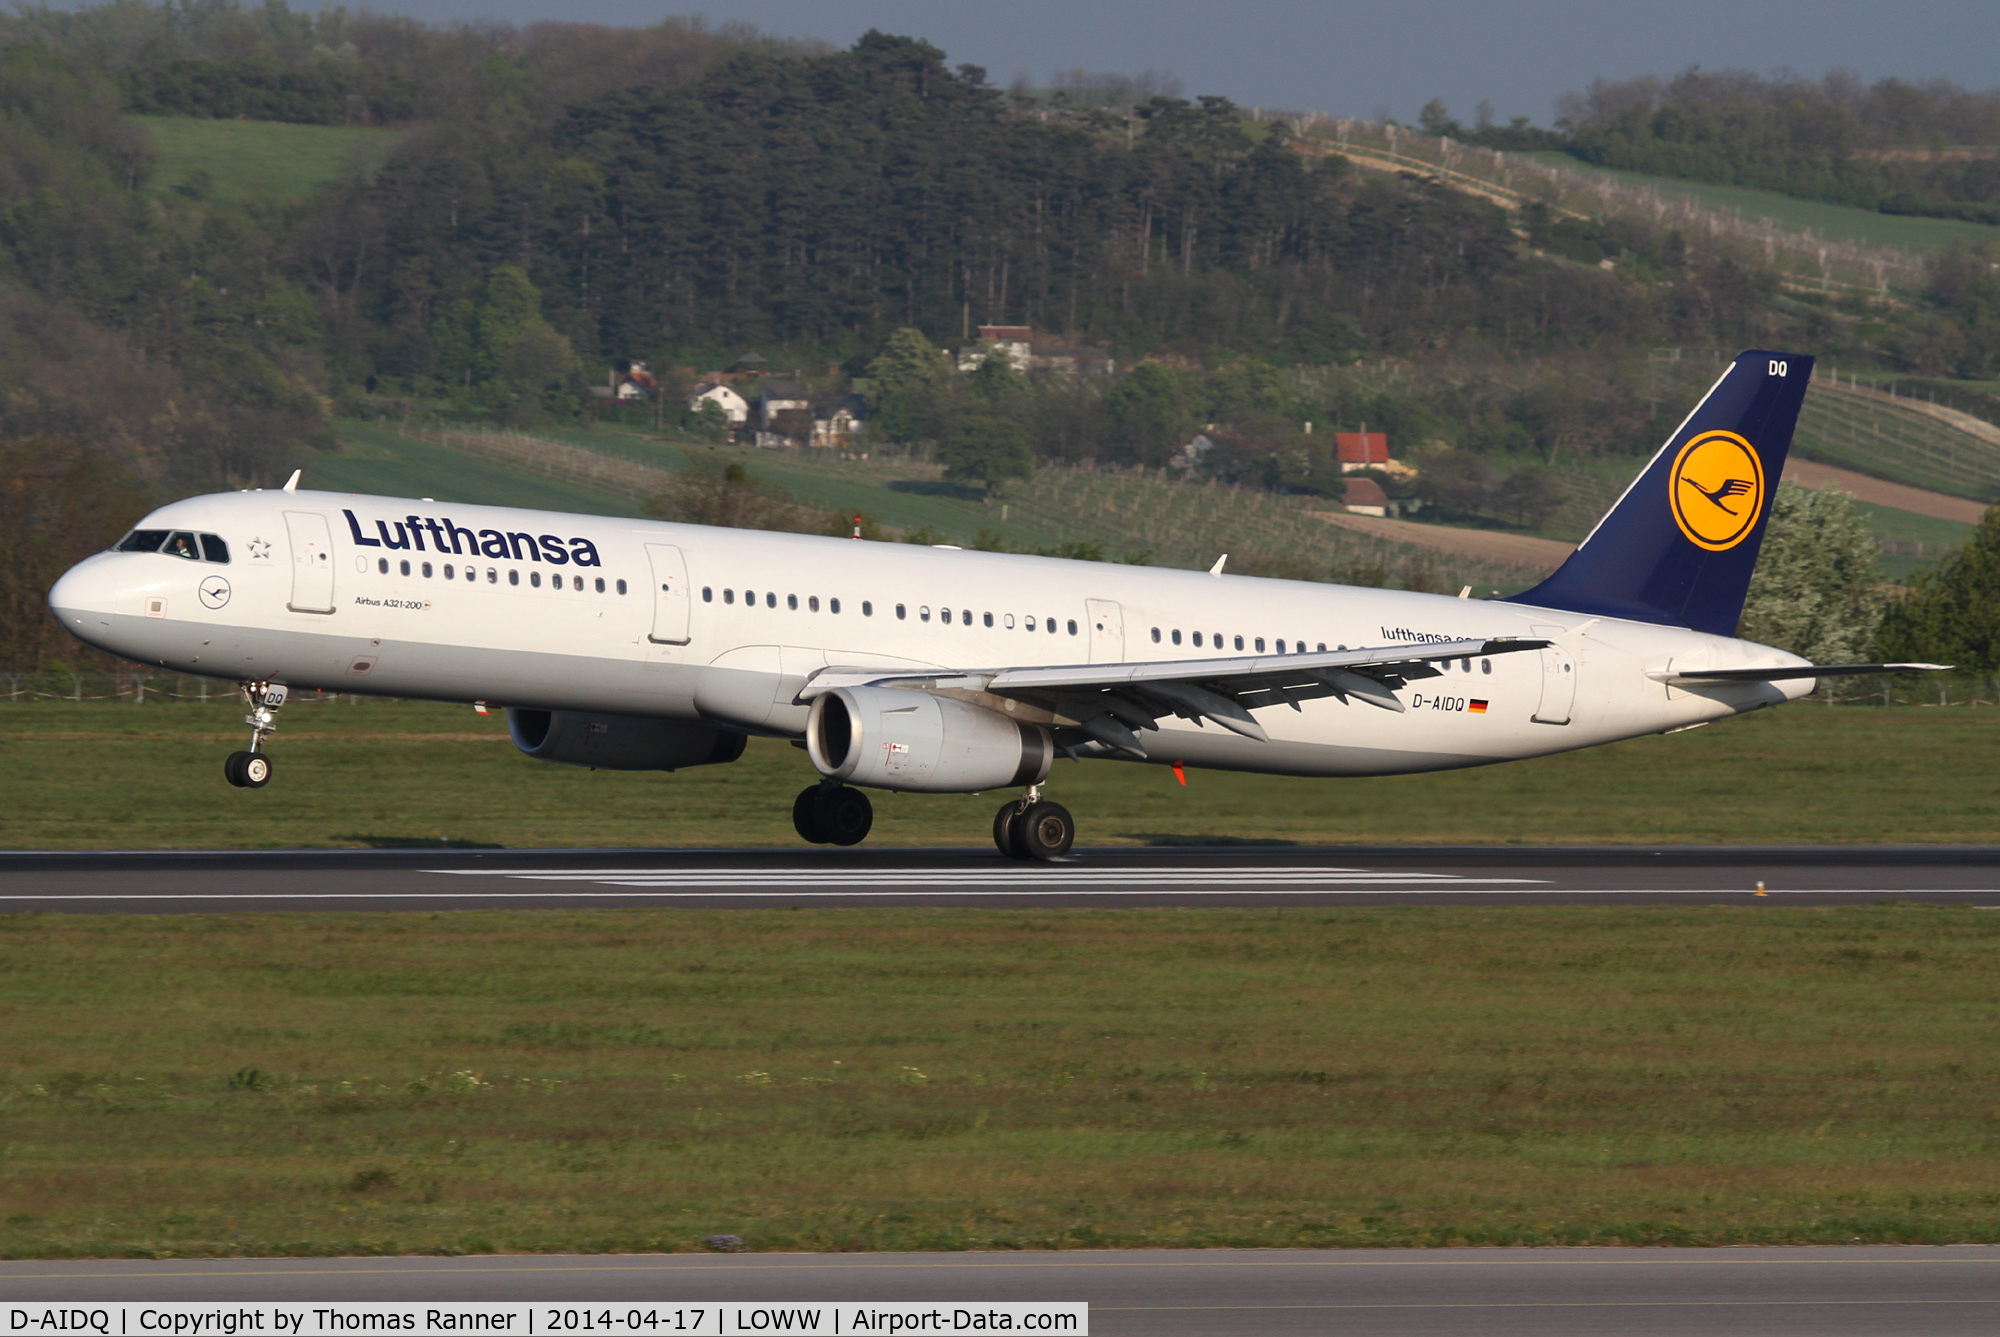 D-AIDQ, 2012 Airbus A321-231 C/N 5028, Lufthansa A321